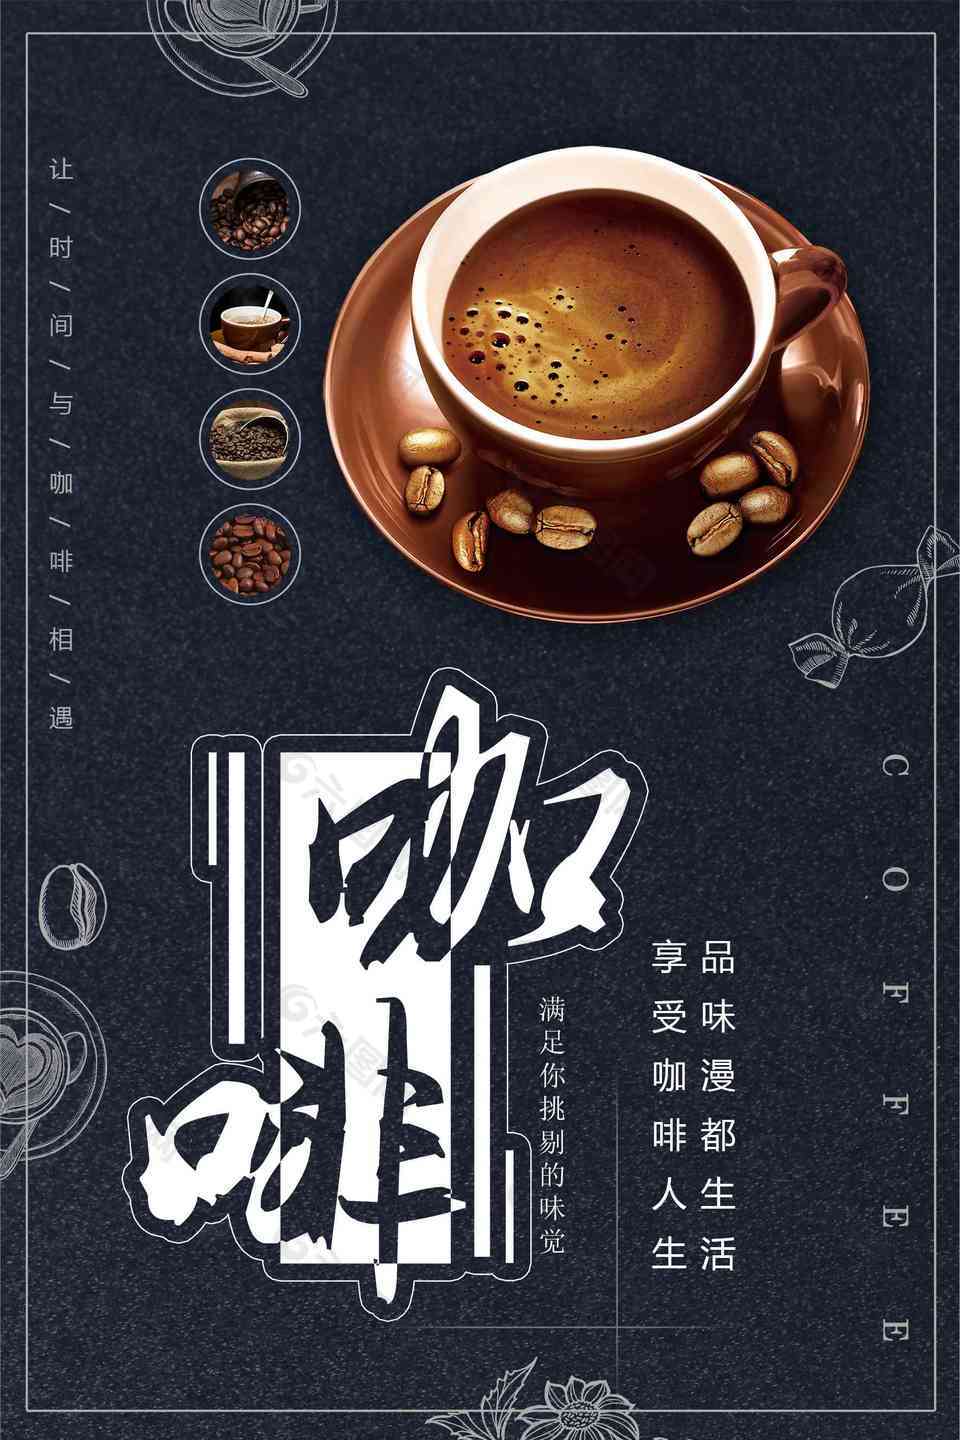 美式现磨咖啡海报设计